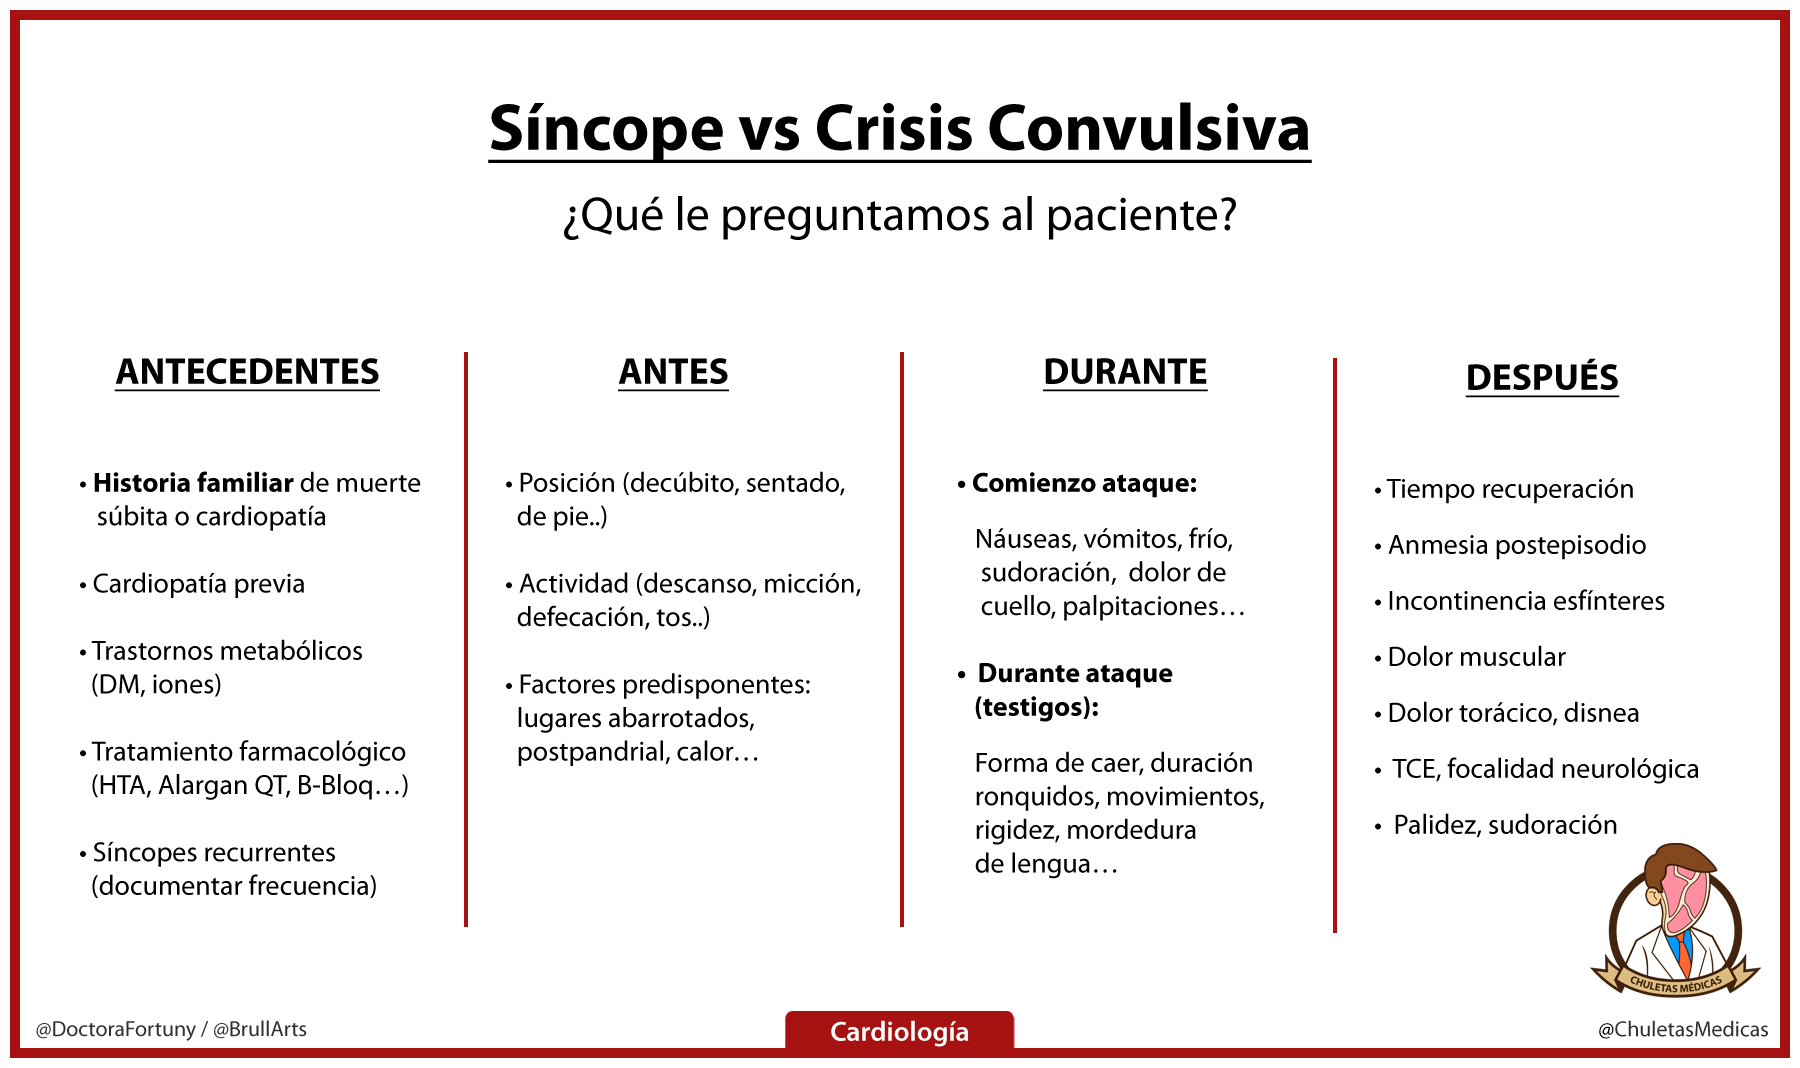 Síncope vs Crisis Convulsiva: ¿Qué le preguntamos al paciente? tabla